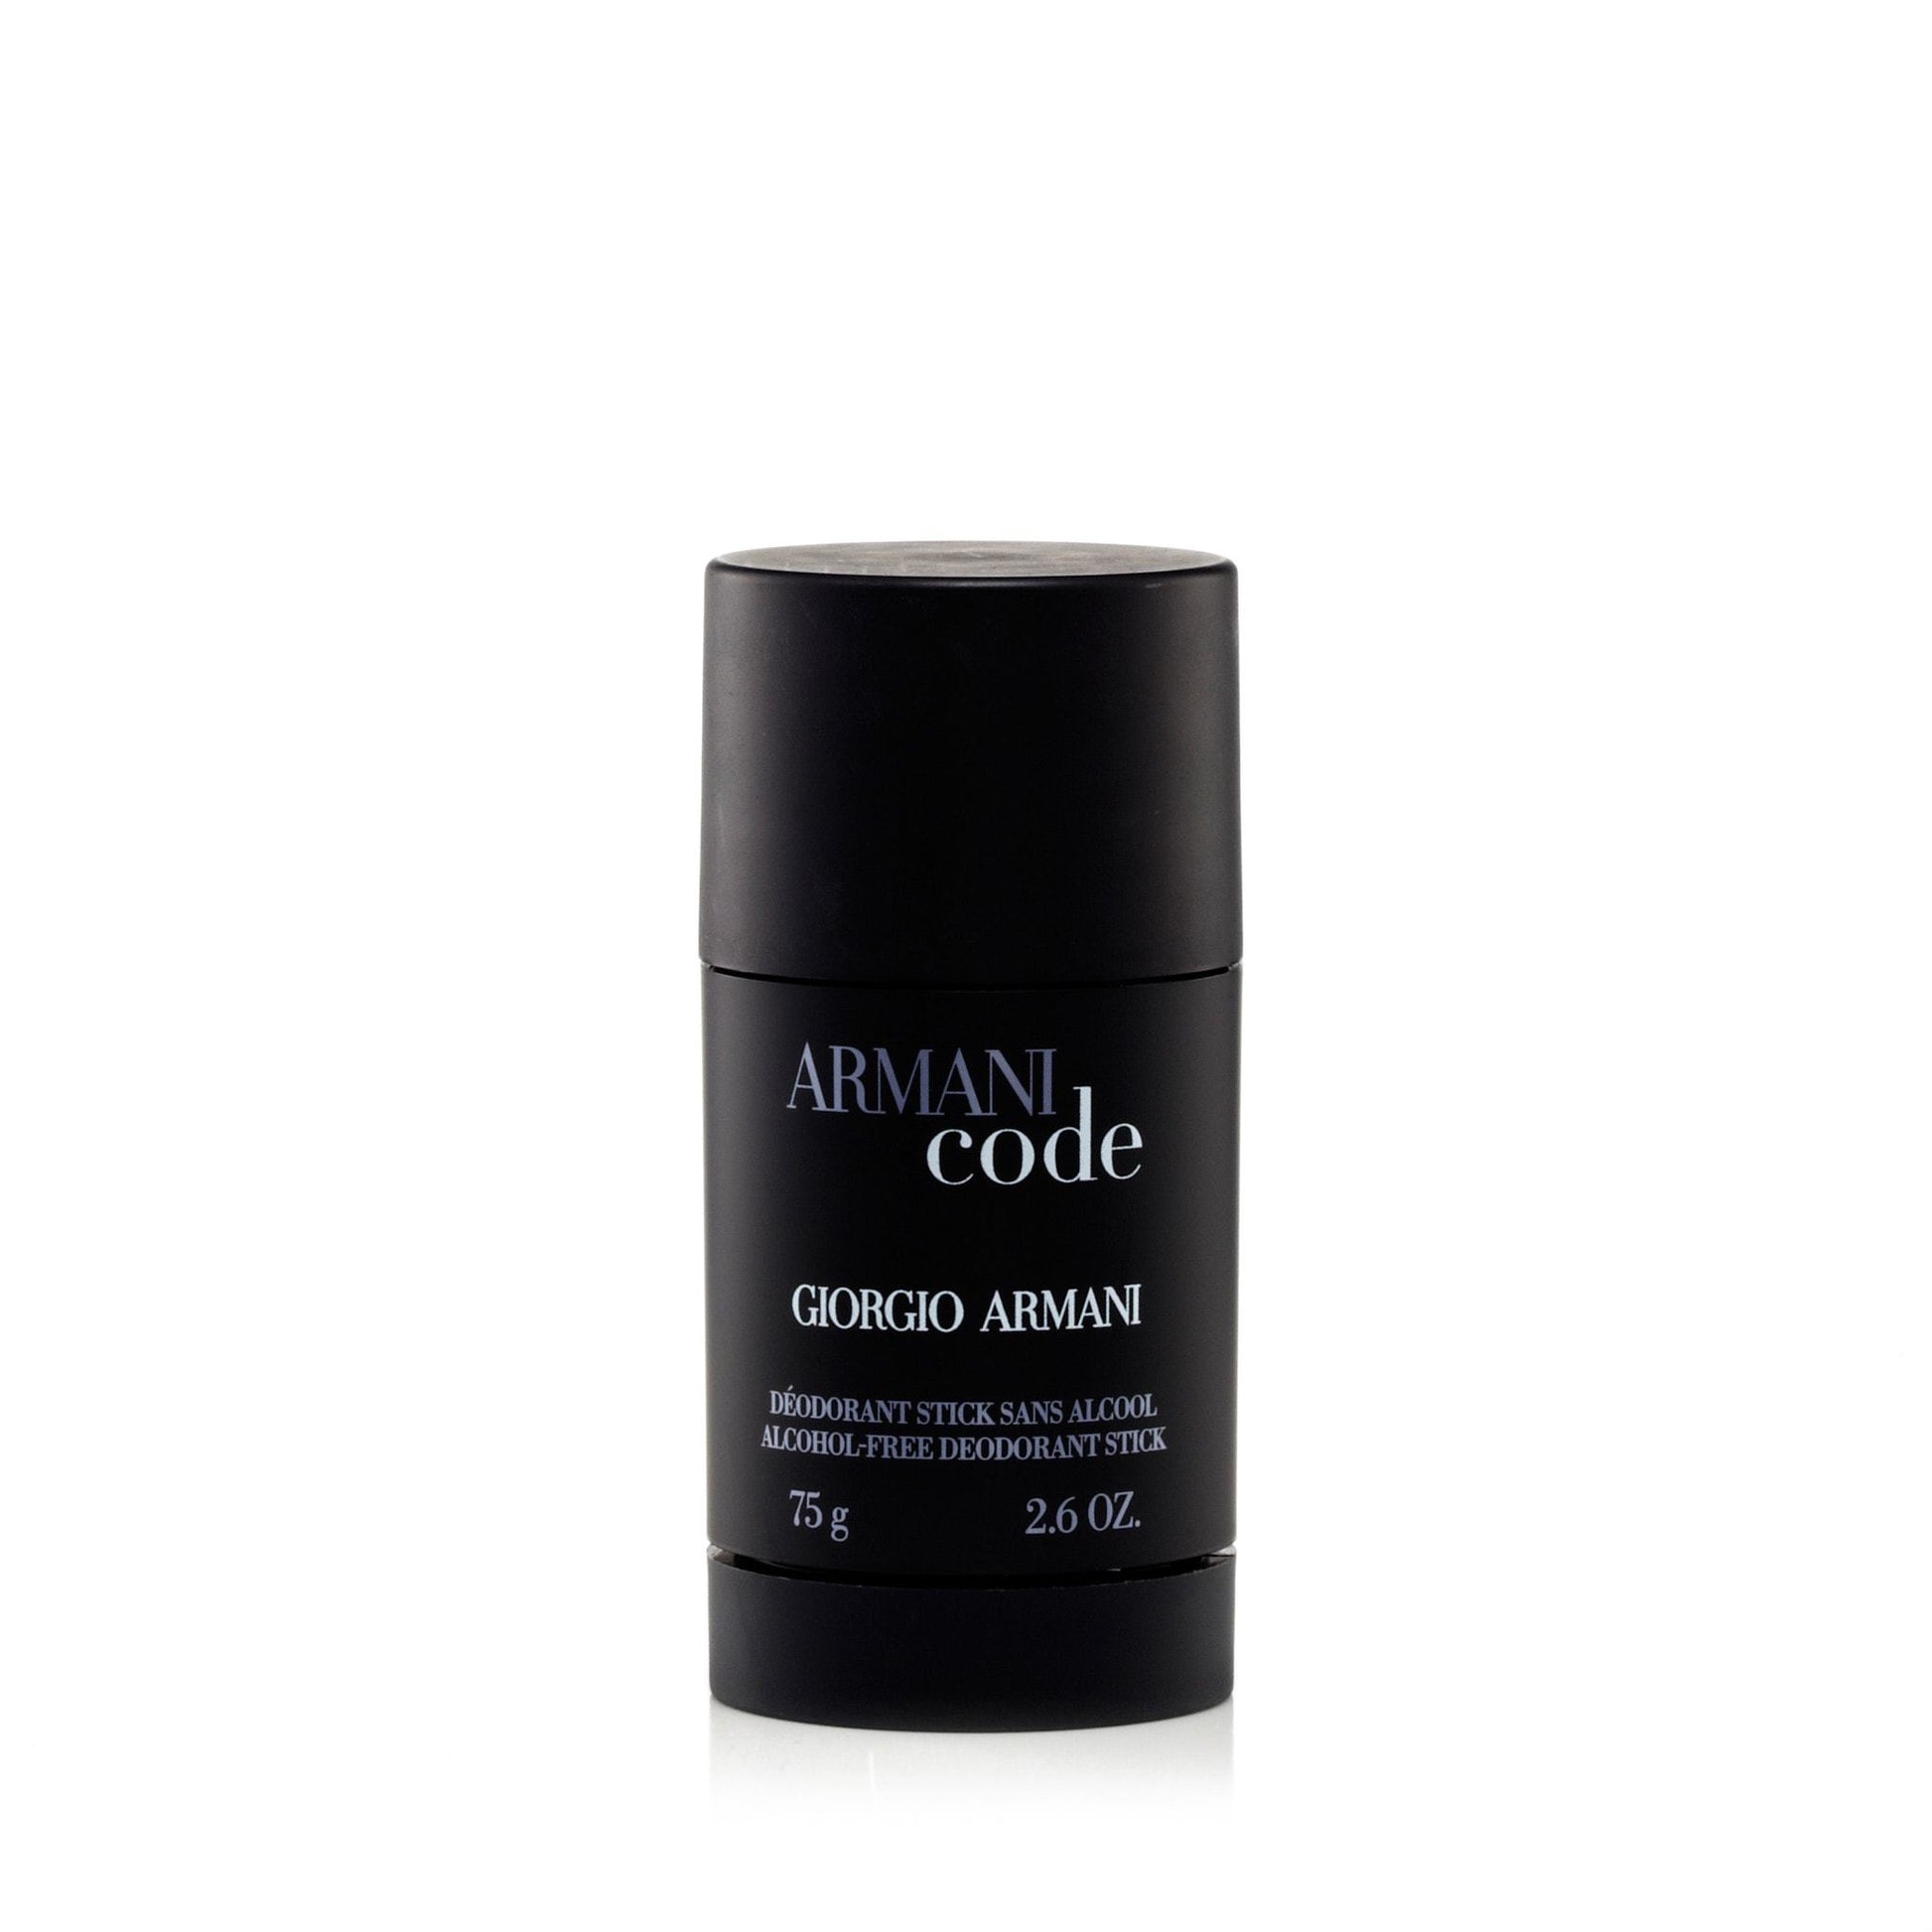 Armani Code Deodorant for Men by Giorgio Armani, Product image 1